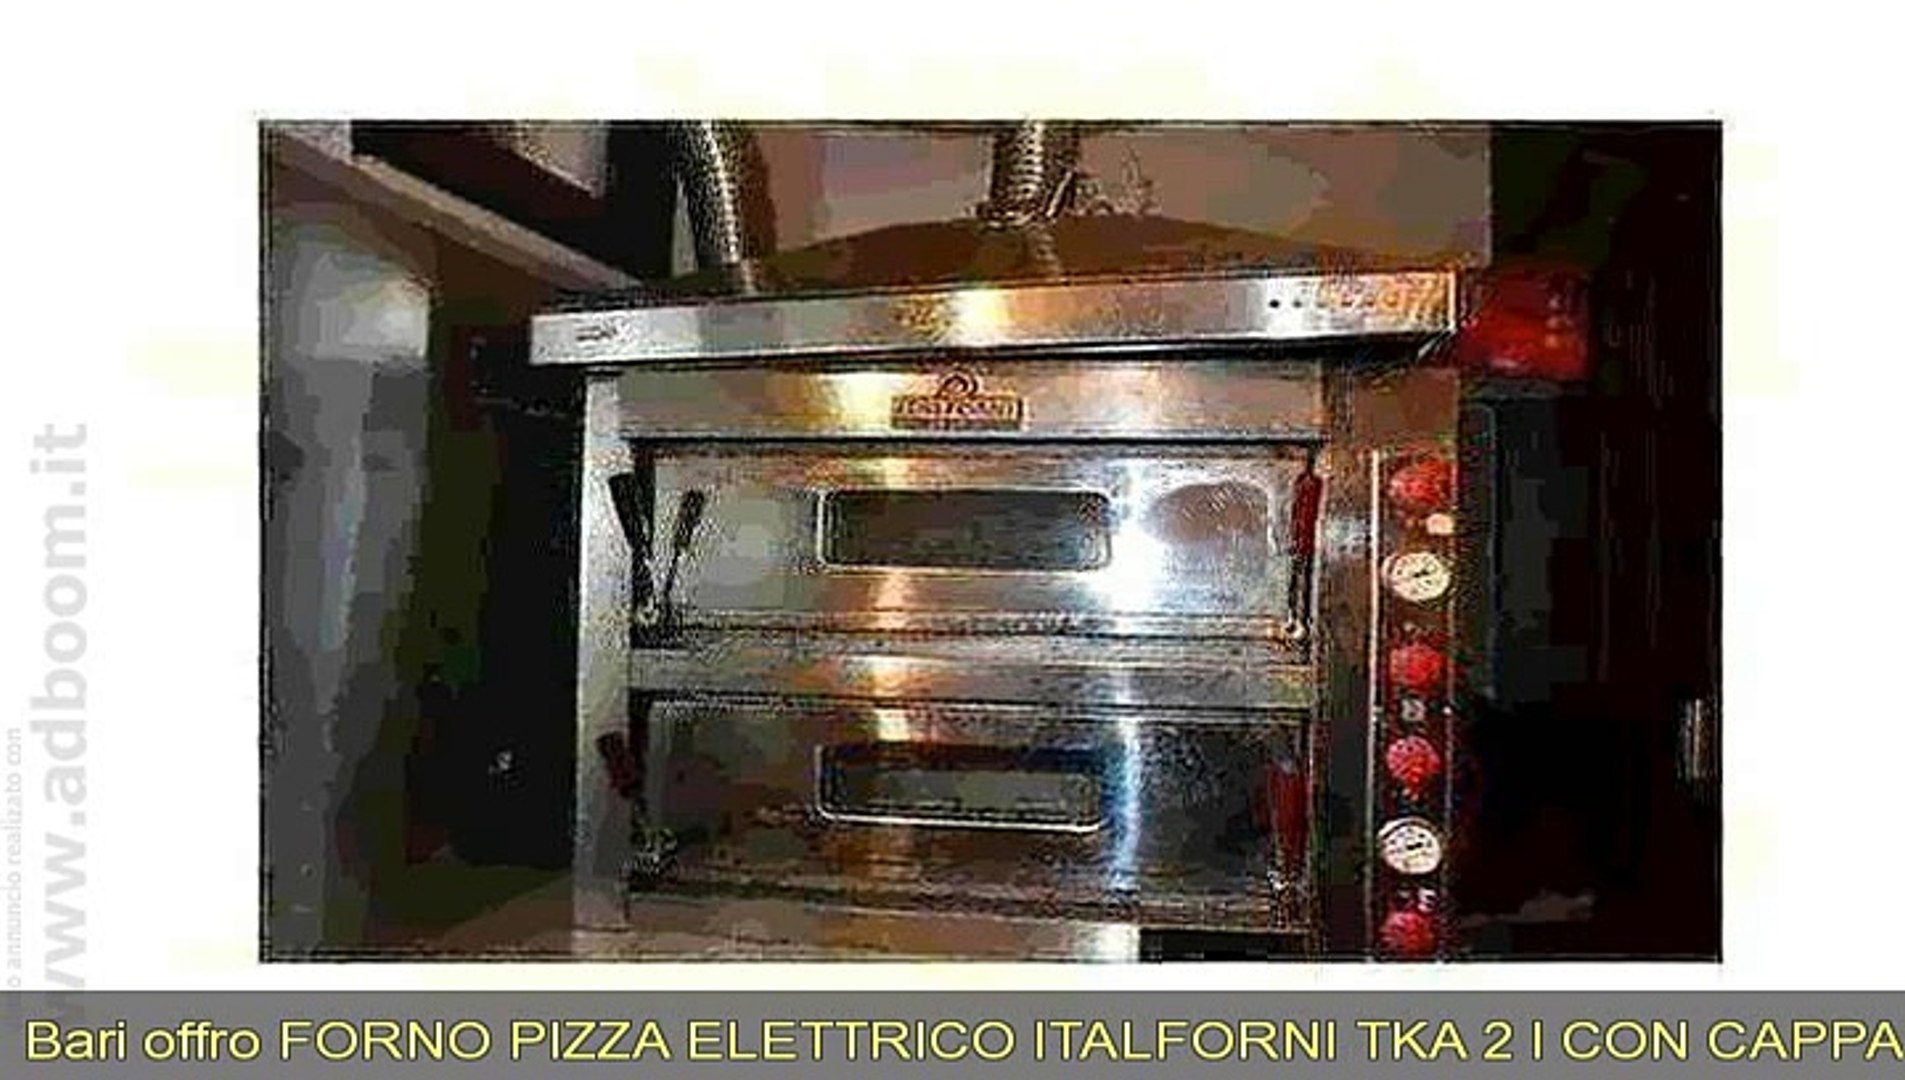 BARI, CASTELLANA GROTTE FORNO PIZZA ELETTRICO ITALFORNI TKA 2 I CON CAPPA  2011 EURO 1.500 - Video Dailymotion